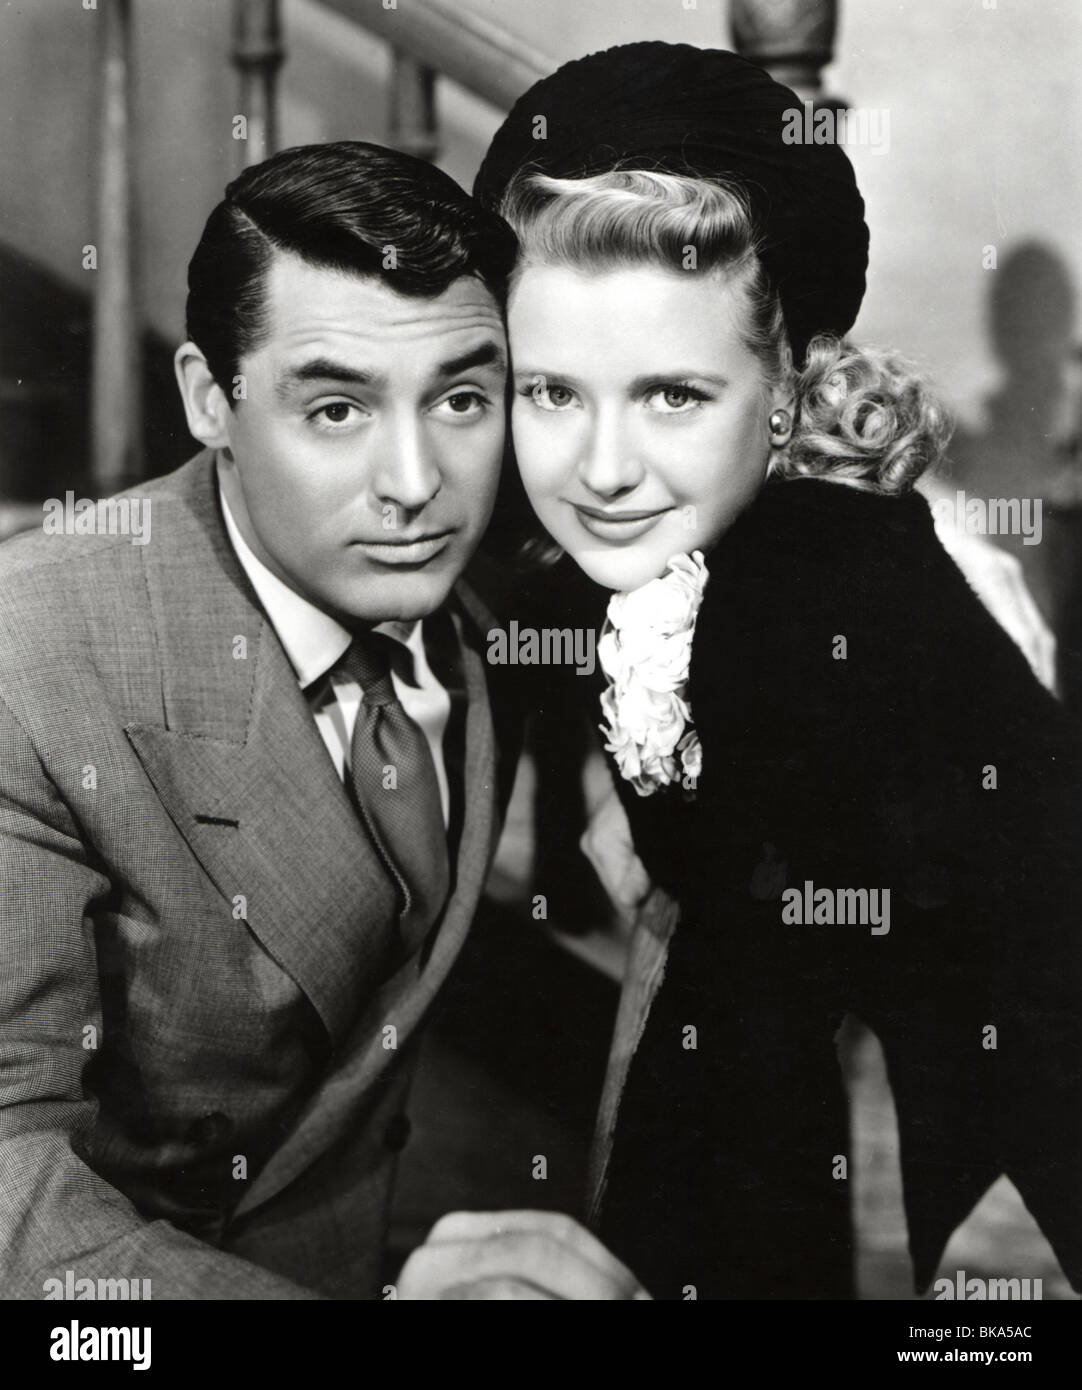 ARSENIC et VIEILLES DENTELLES (1944) Cary Grant, PRISCILLA LANE AOL 007P Banque D'Images